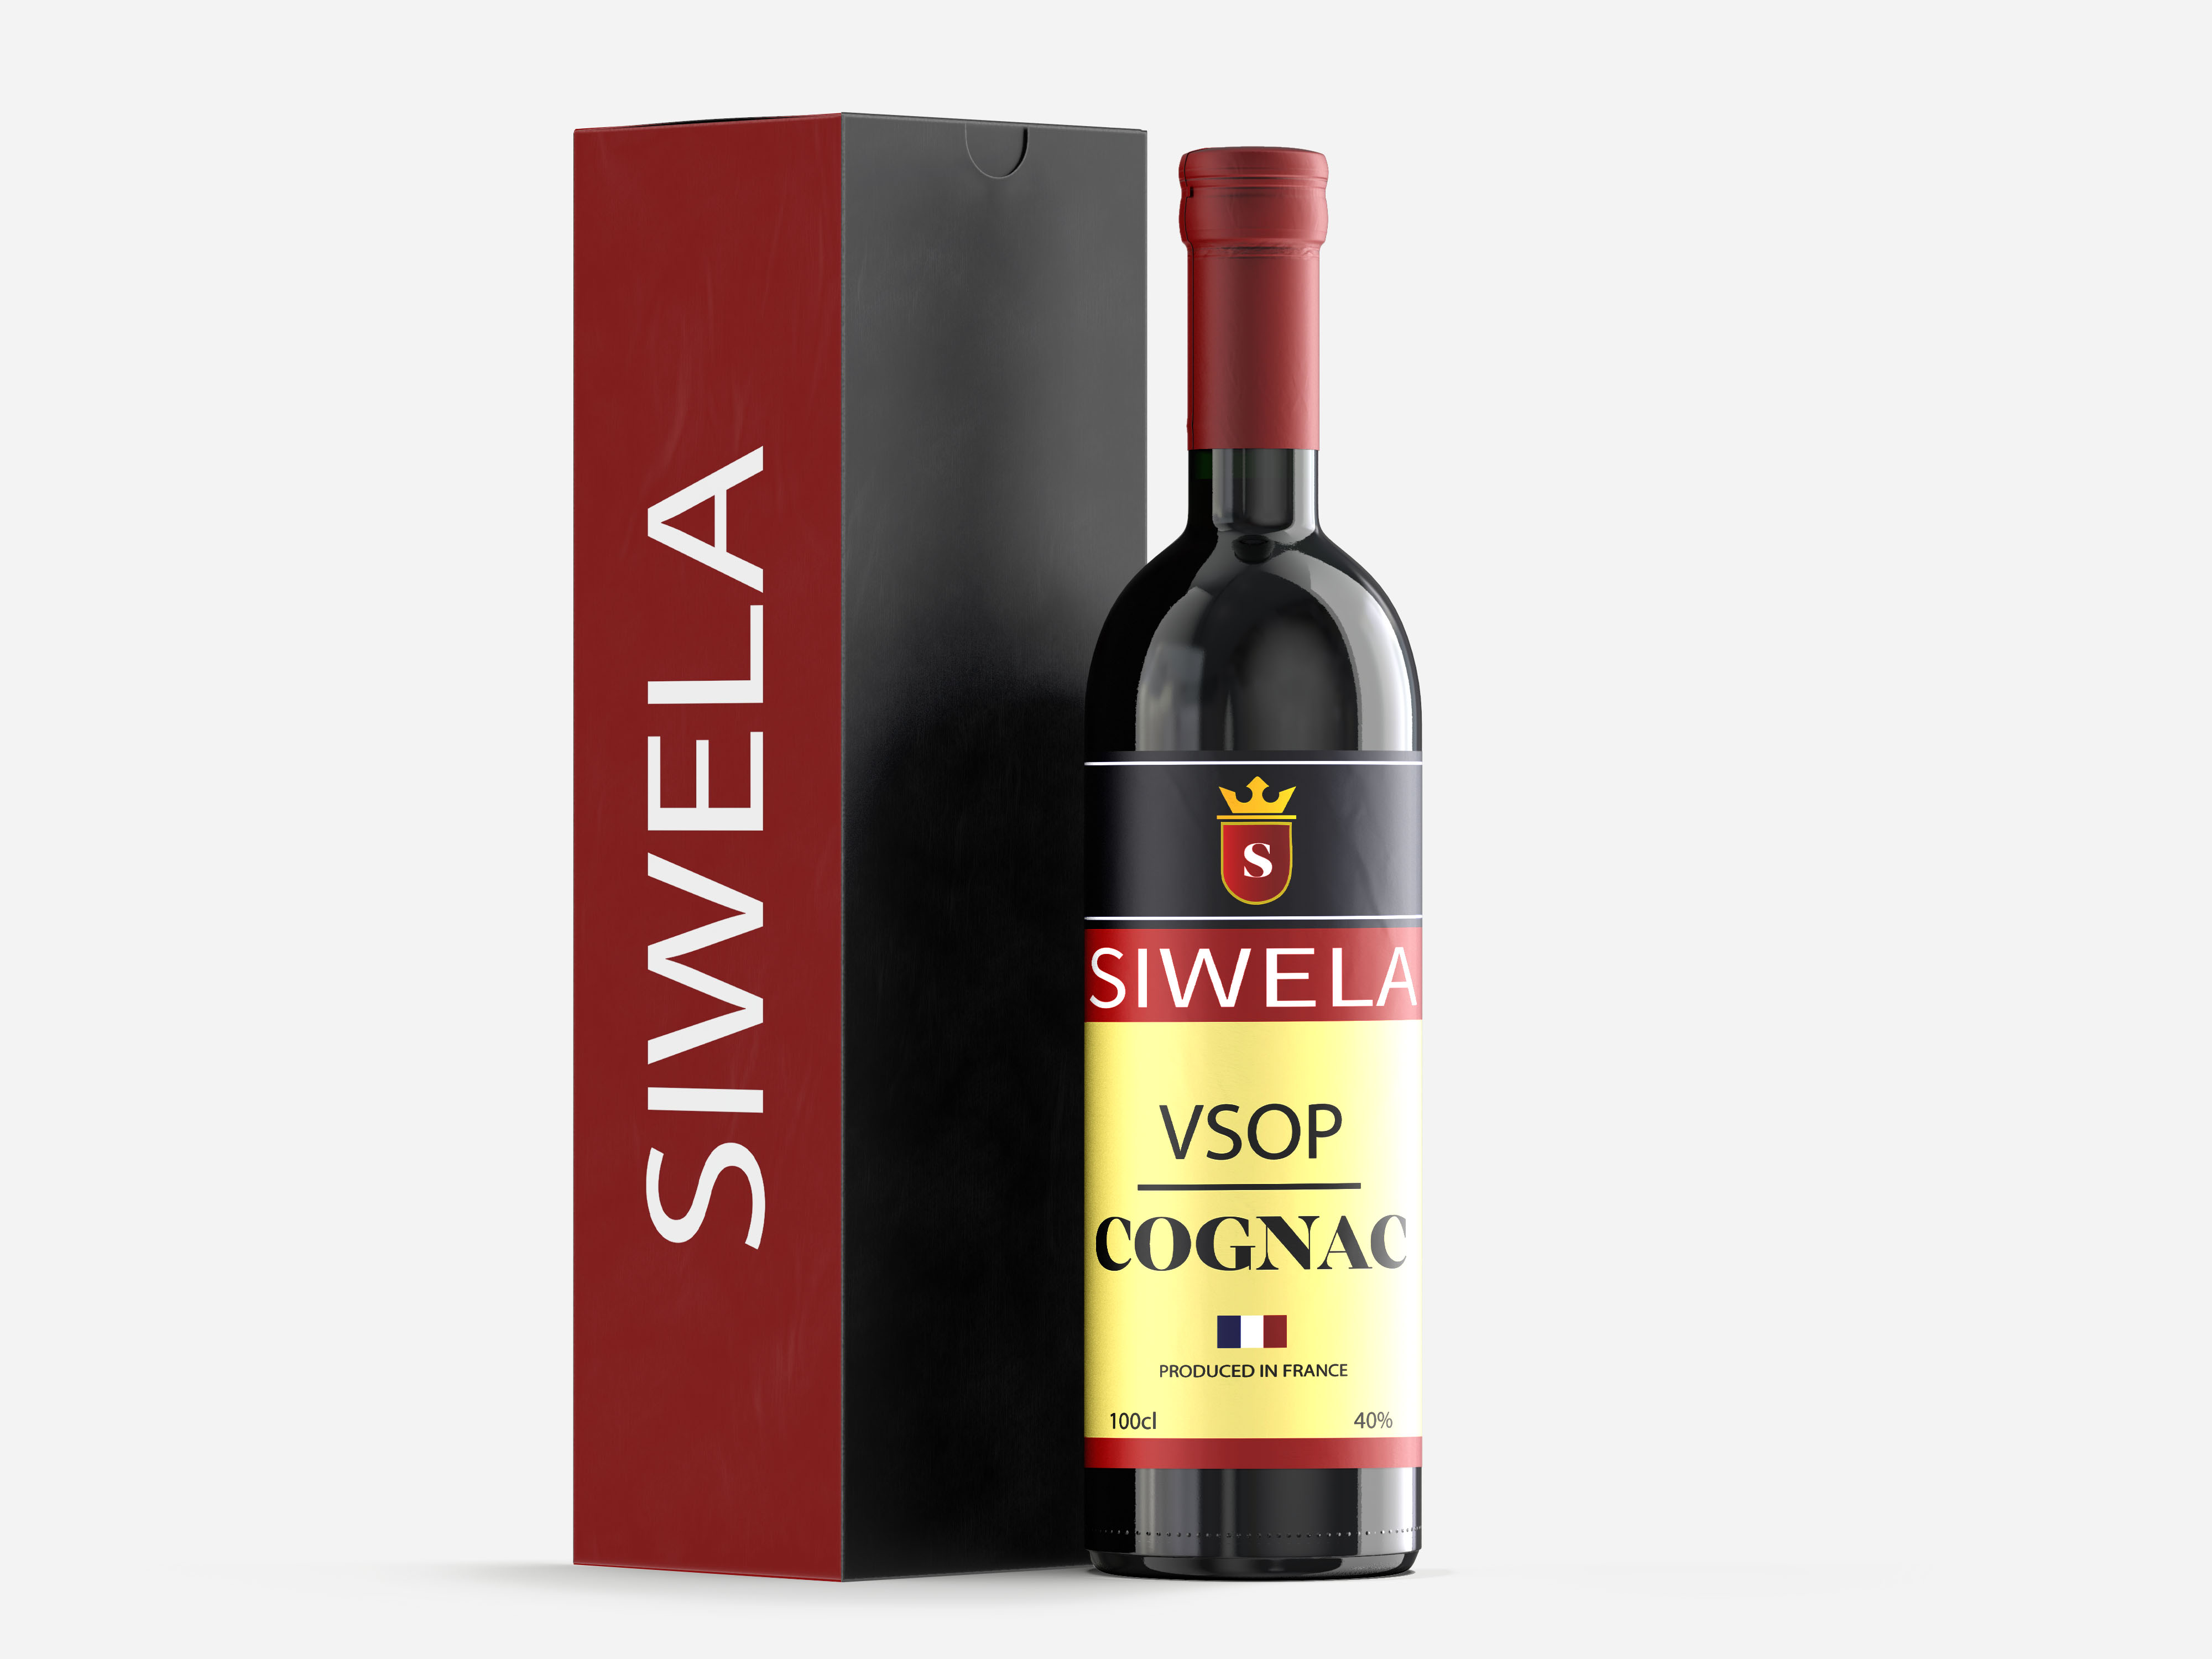 Siwela VSOP Cognac 100cl x 12